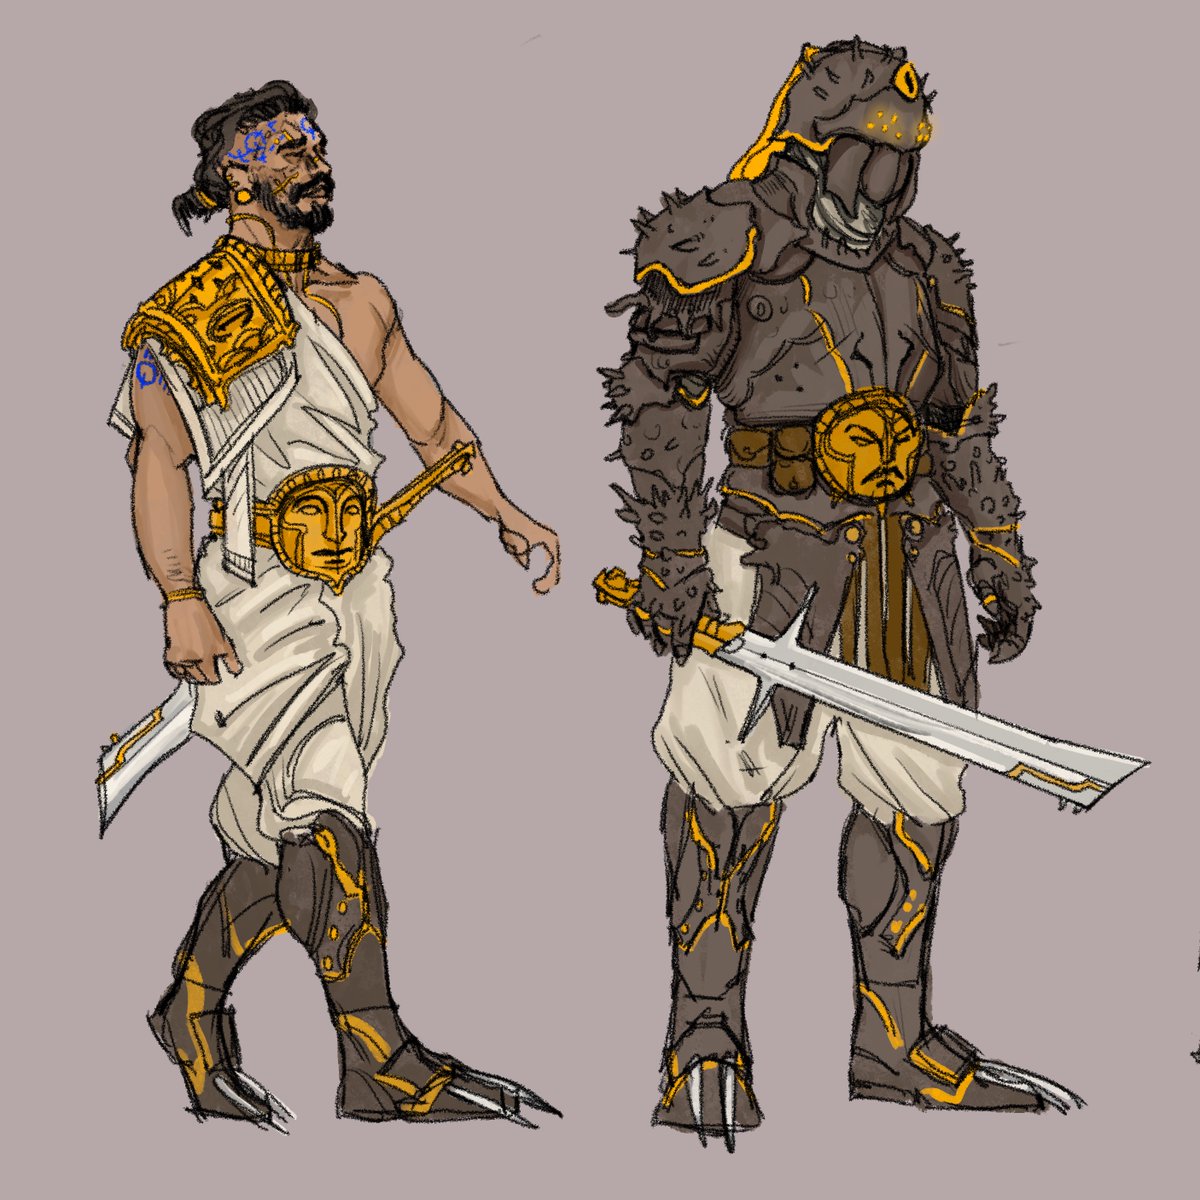 Dune designs: imperial sardaukar in casual attire and combat armor.